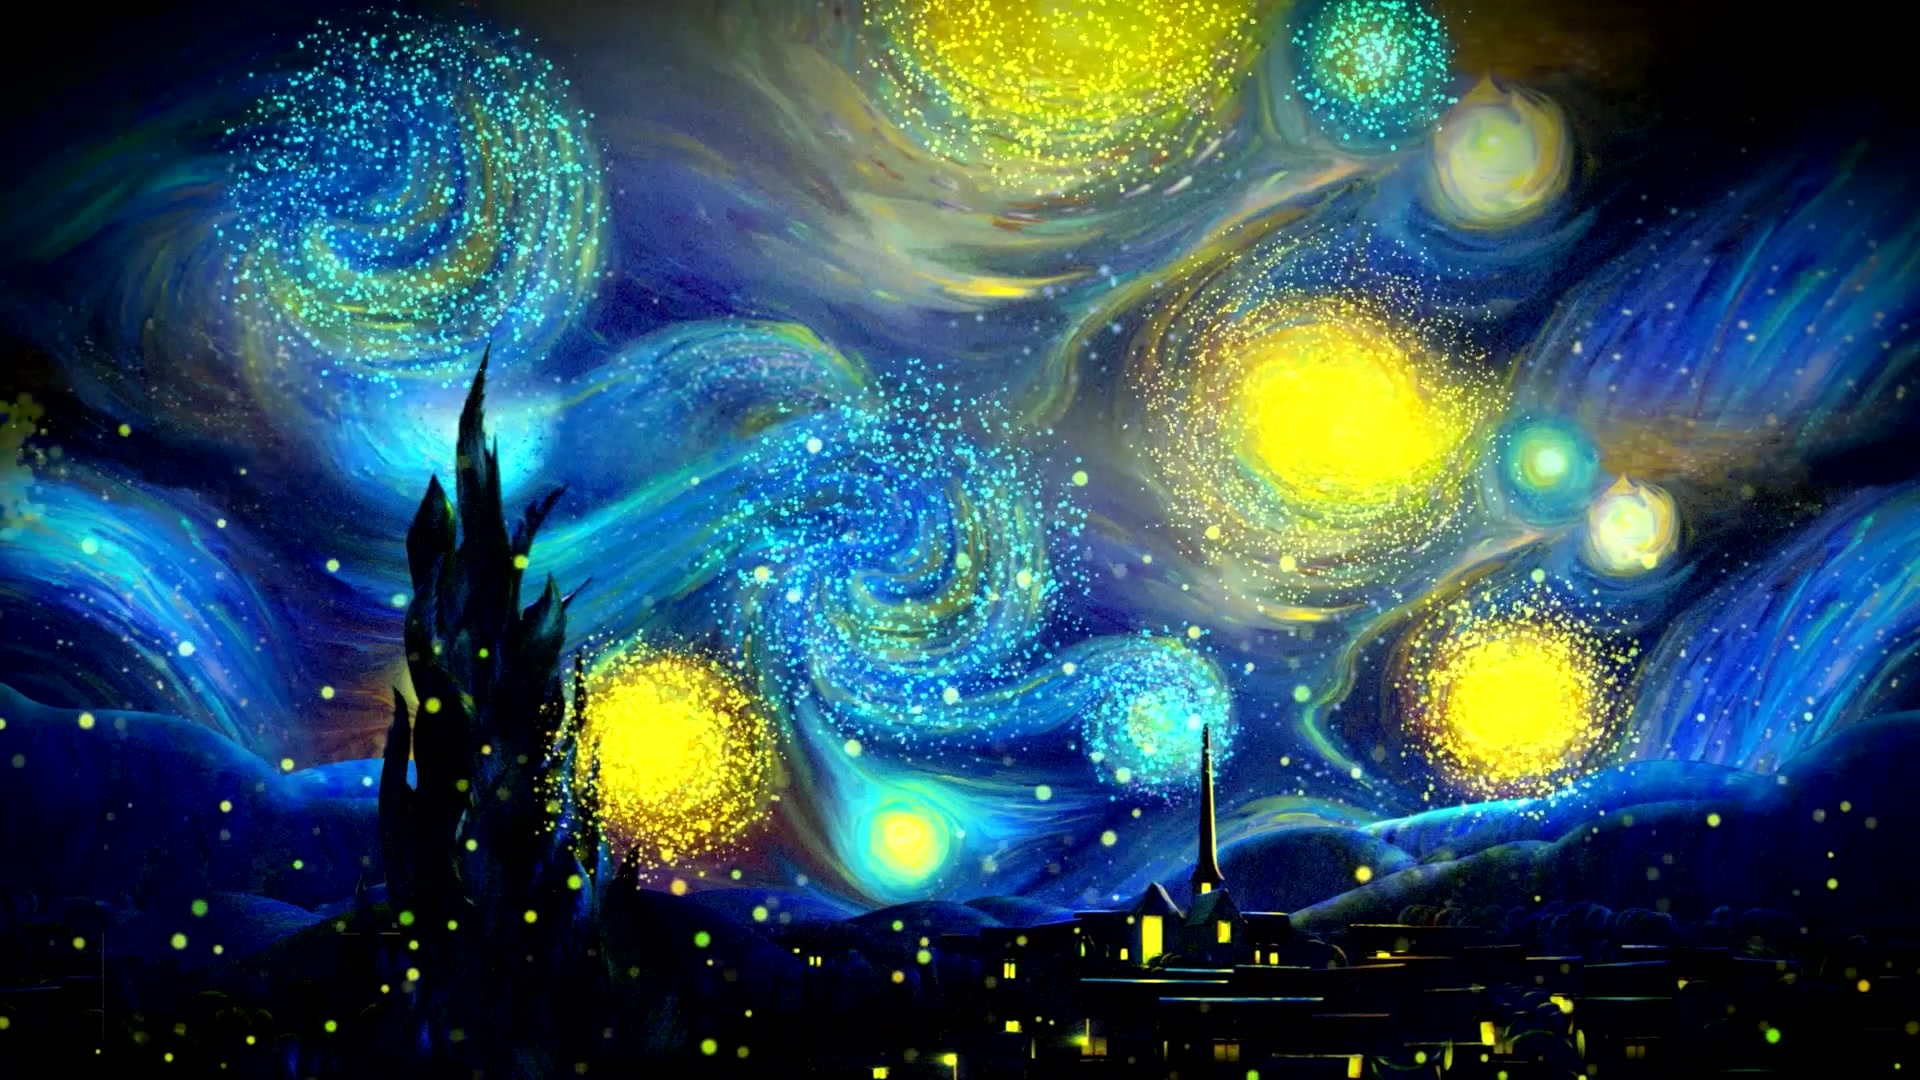 【经典】梵高作品《星空》动态壁纸,让美梦装饰你的桌面